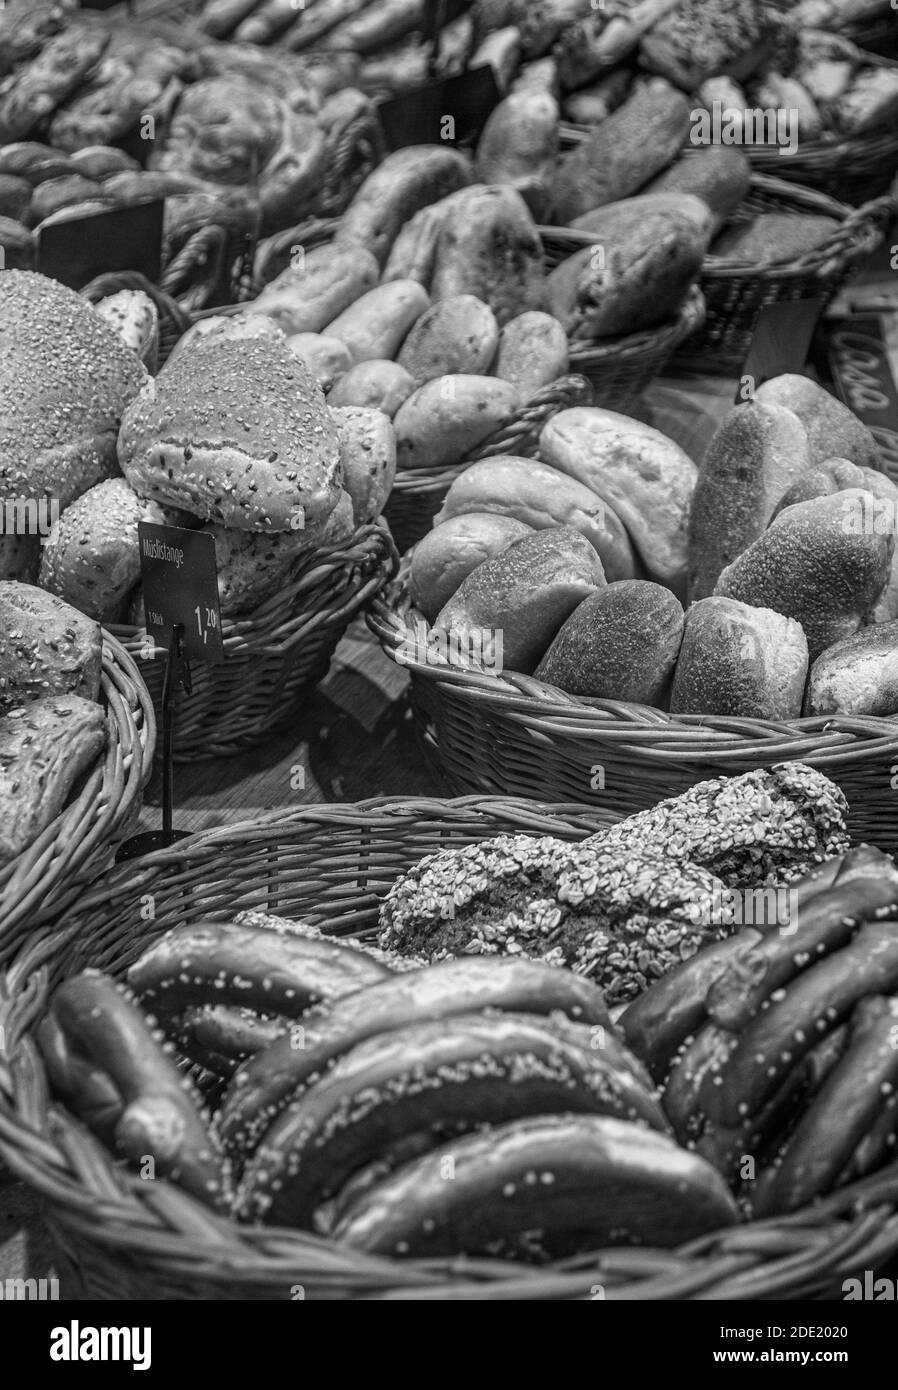 Schwarz-Weiß-Bild von einer Auswahl von Broten und Brezeln in Körben zum Verkauf in einer Bäckerei Stockfoto